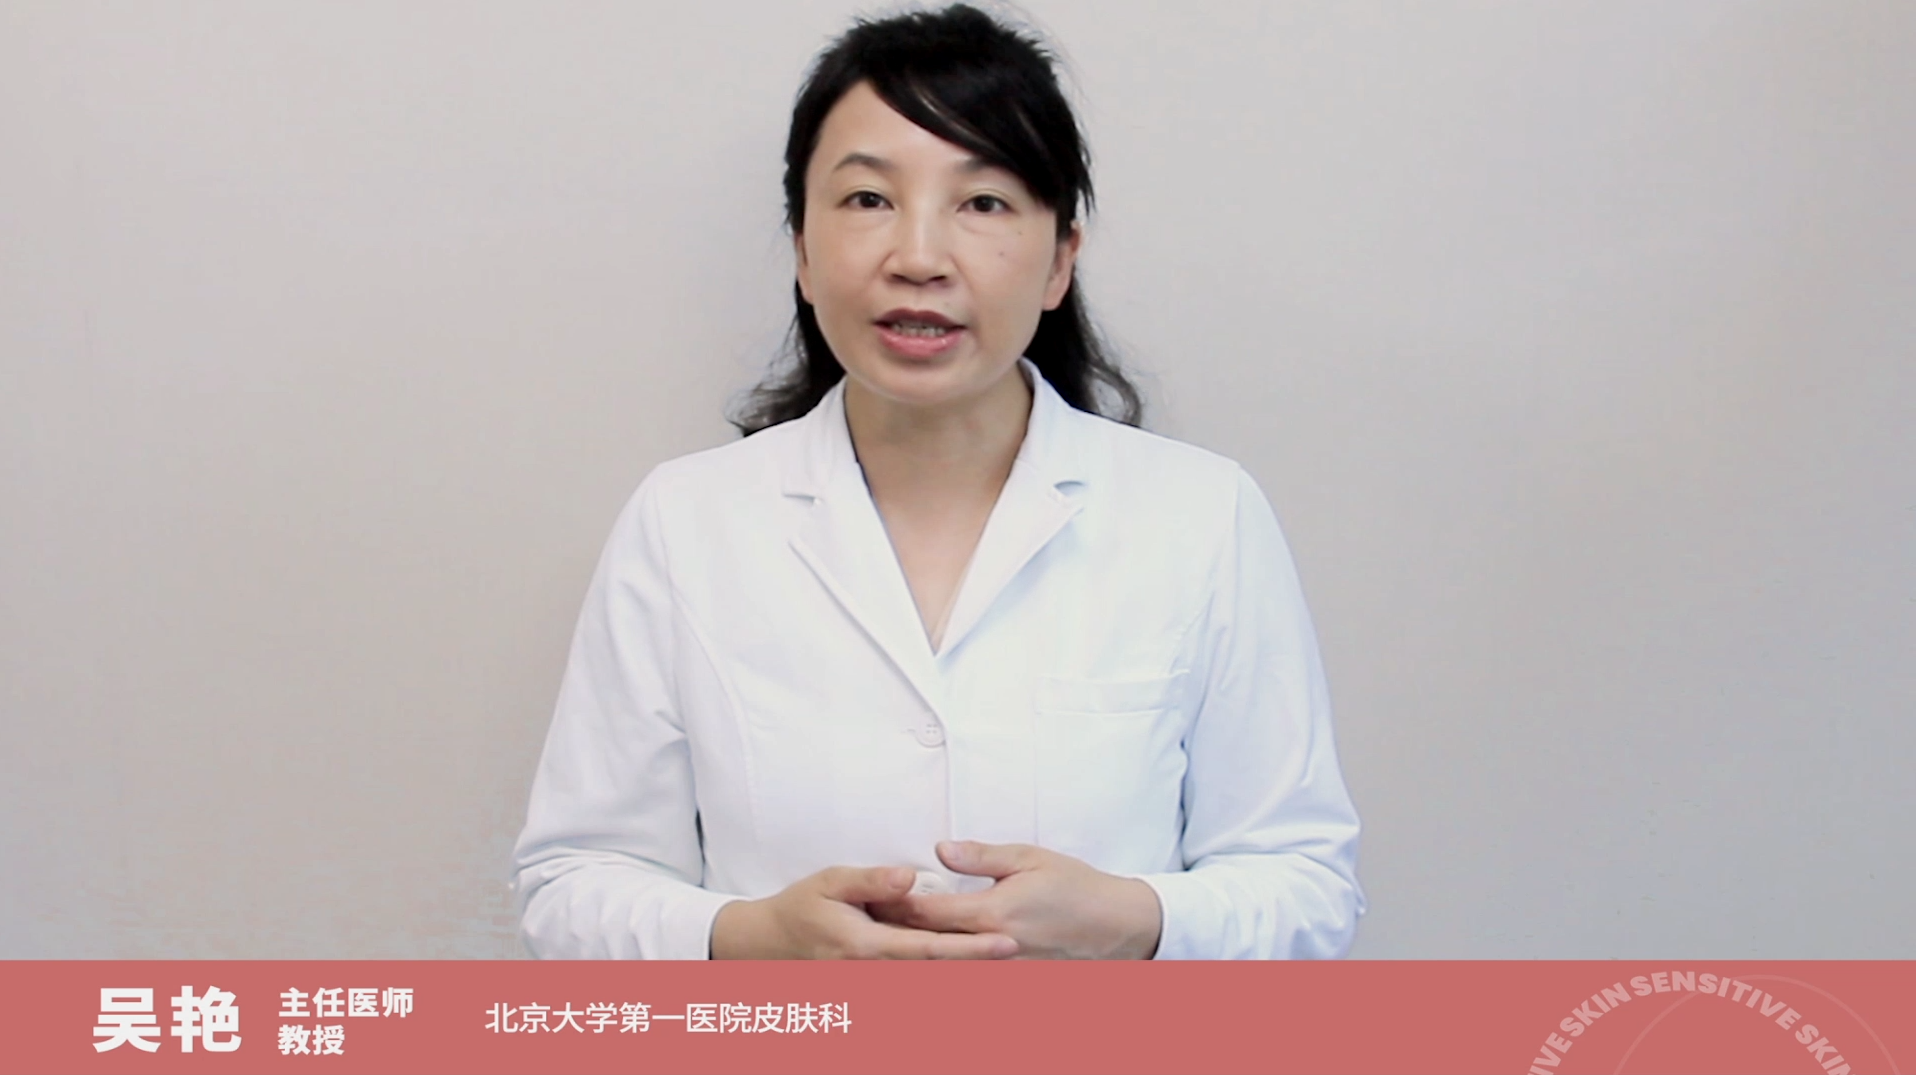 雅漾联合权威机构及知名皮肤科专家发布《2022中国敏感性皮肤护肤百科》